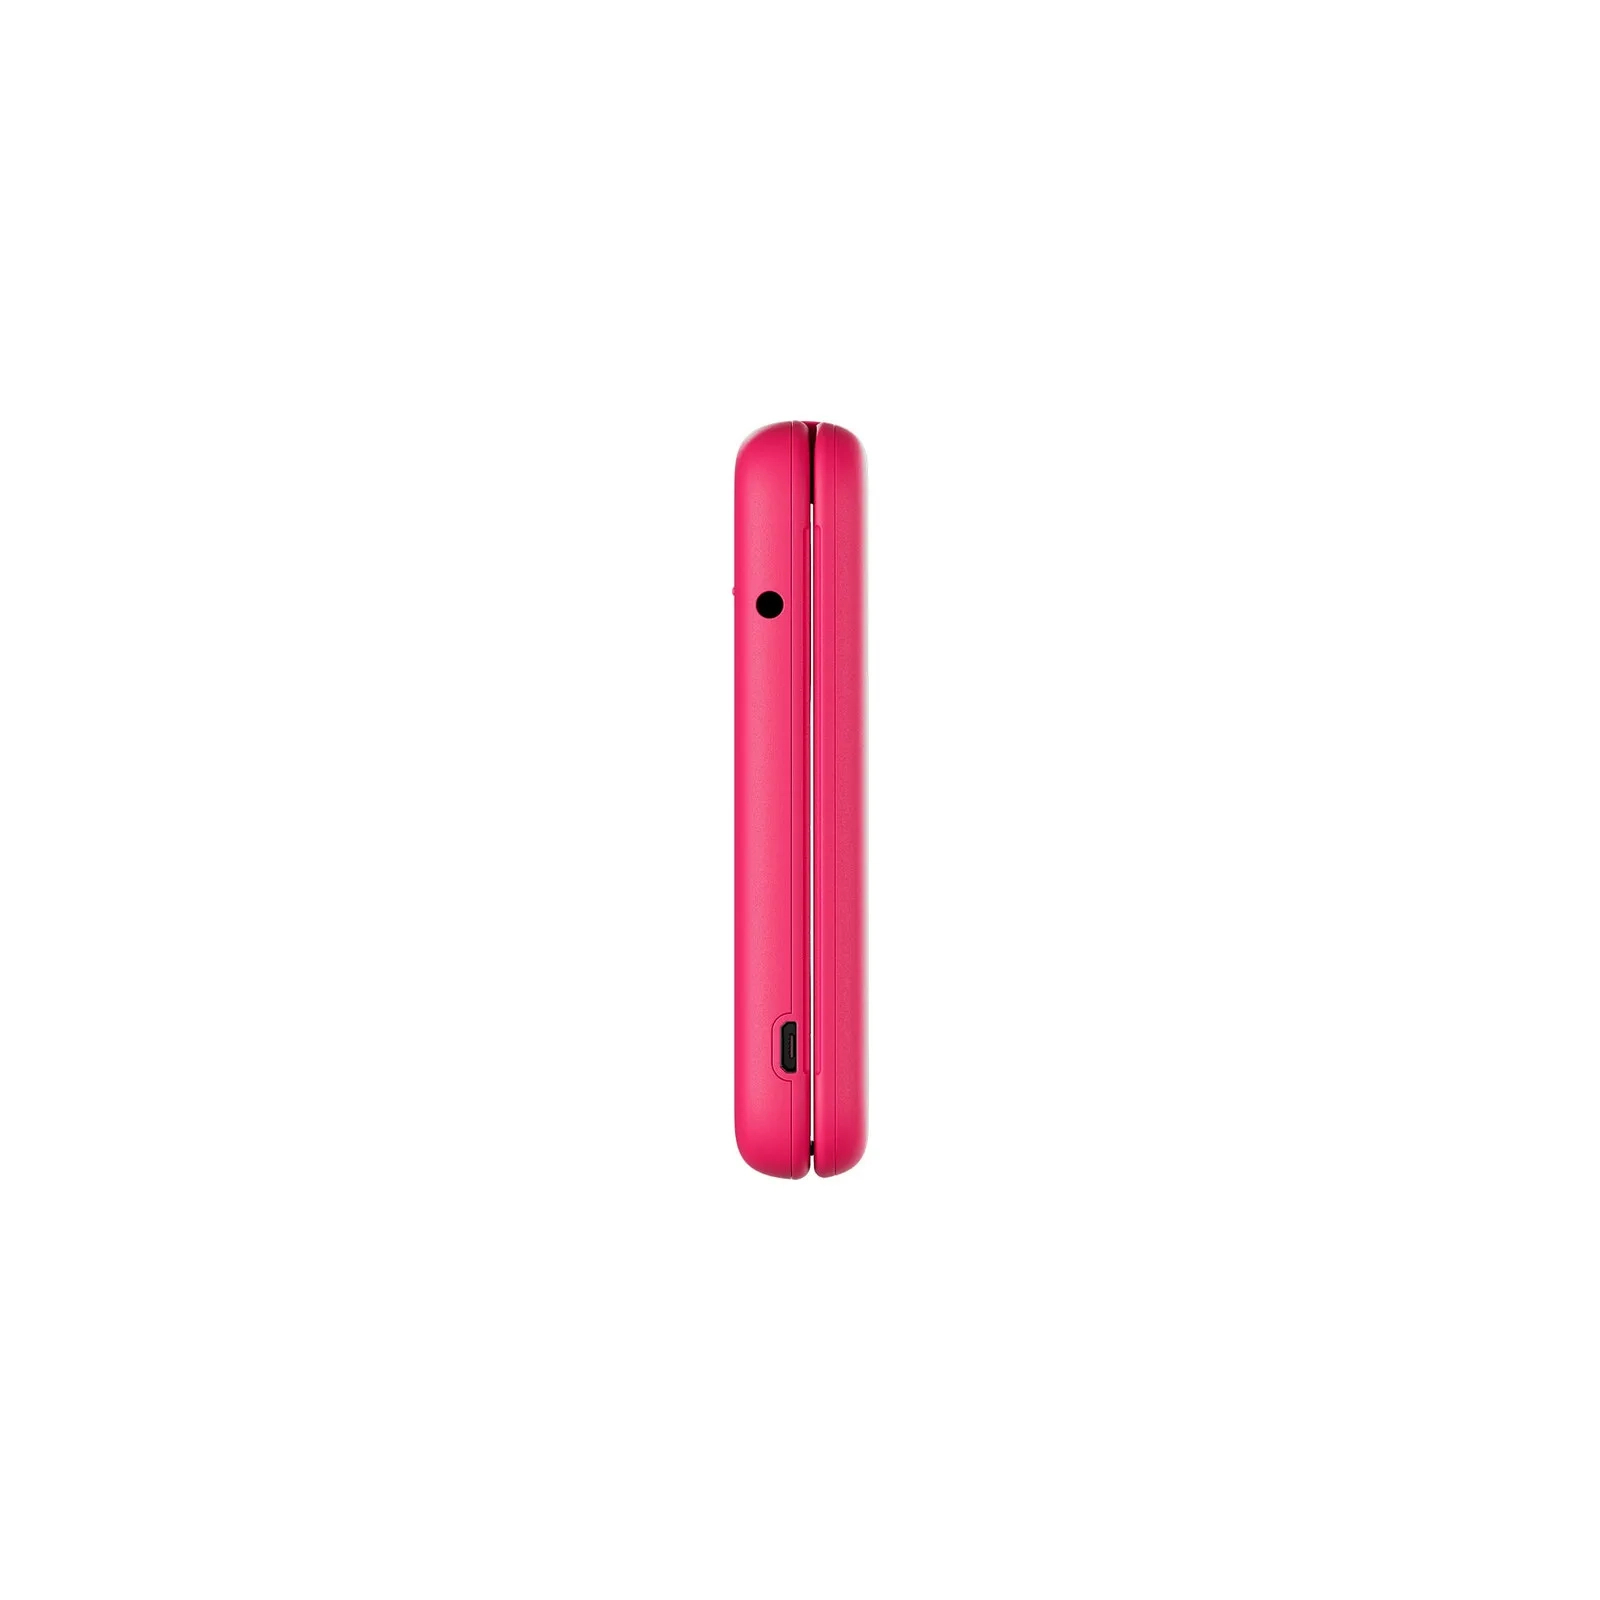 Мобильный телефон Nokia 2660 Flip Pink изображение 4